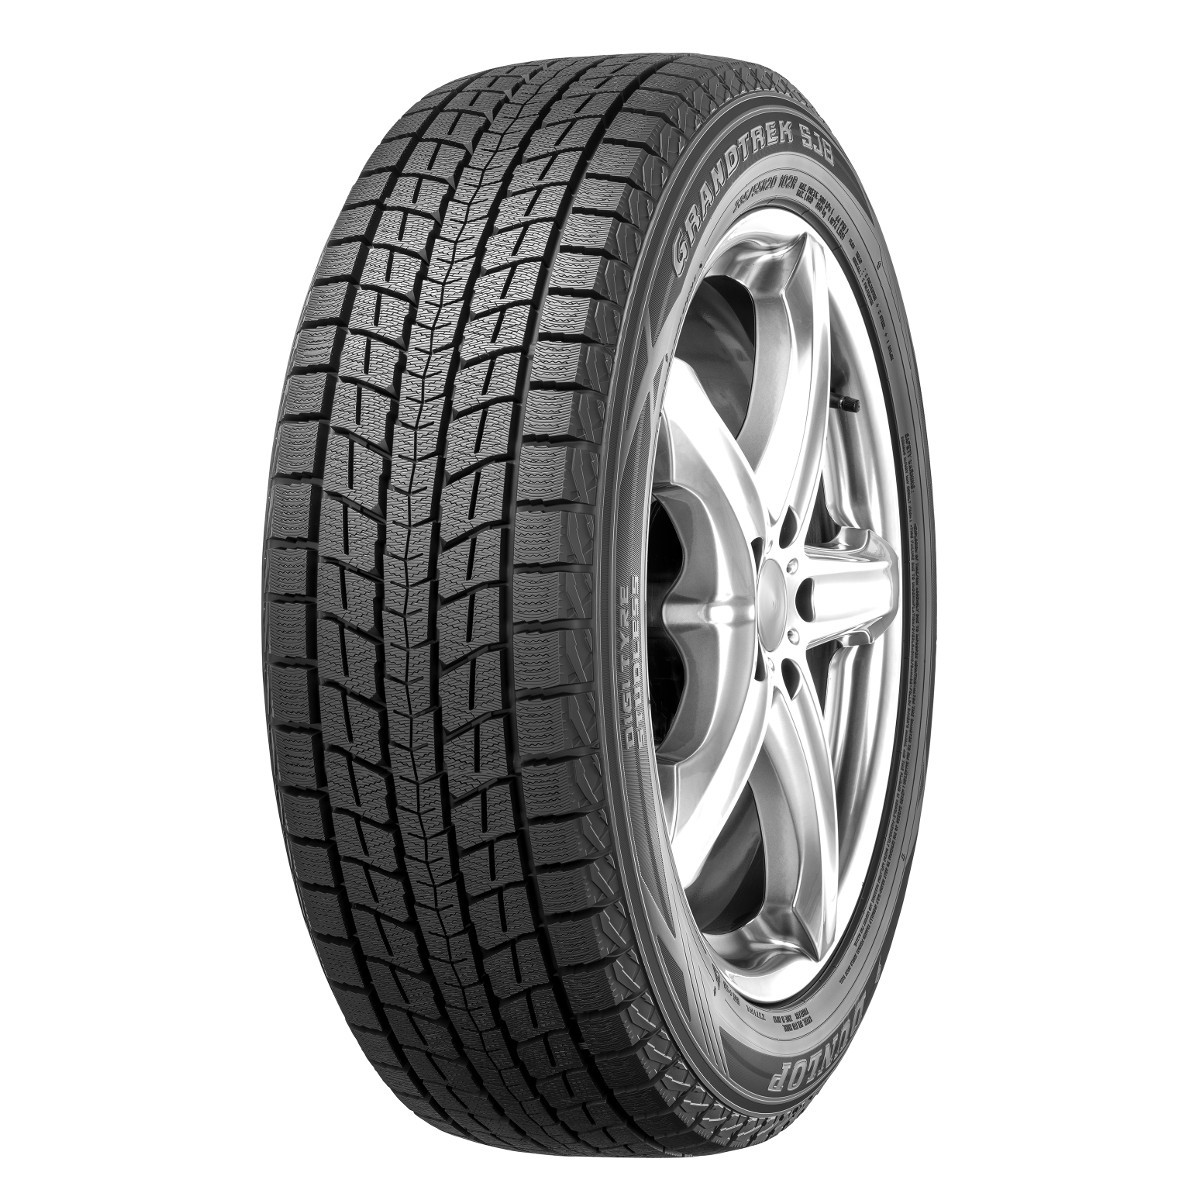 Зимние шины Dunlop Sj8 265/5519 109R